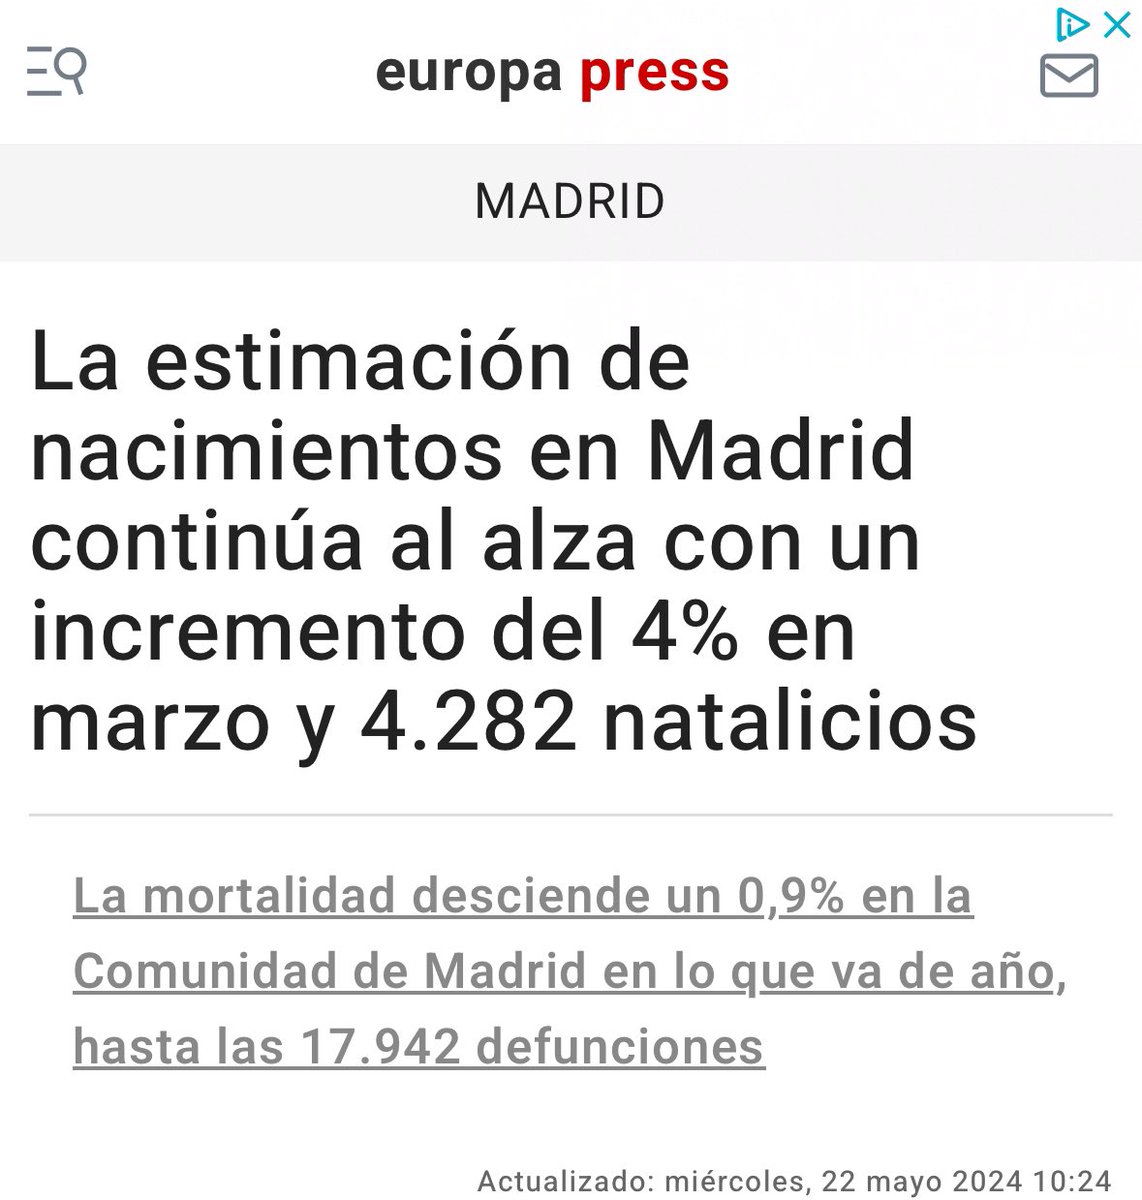 El número de nacimientos sigue creciendo en Madrid, tendencia que se consolida y nos llena de alegría. Nuestro gobierno apuesta por la vida y la familia y por eso hemos puesto en marcha numerosos proyectos para revertir la tendencia negativa. Y funciona… Con 12.794 ilusiones